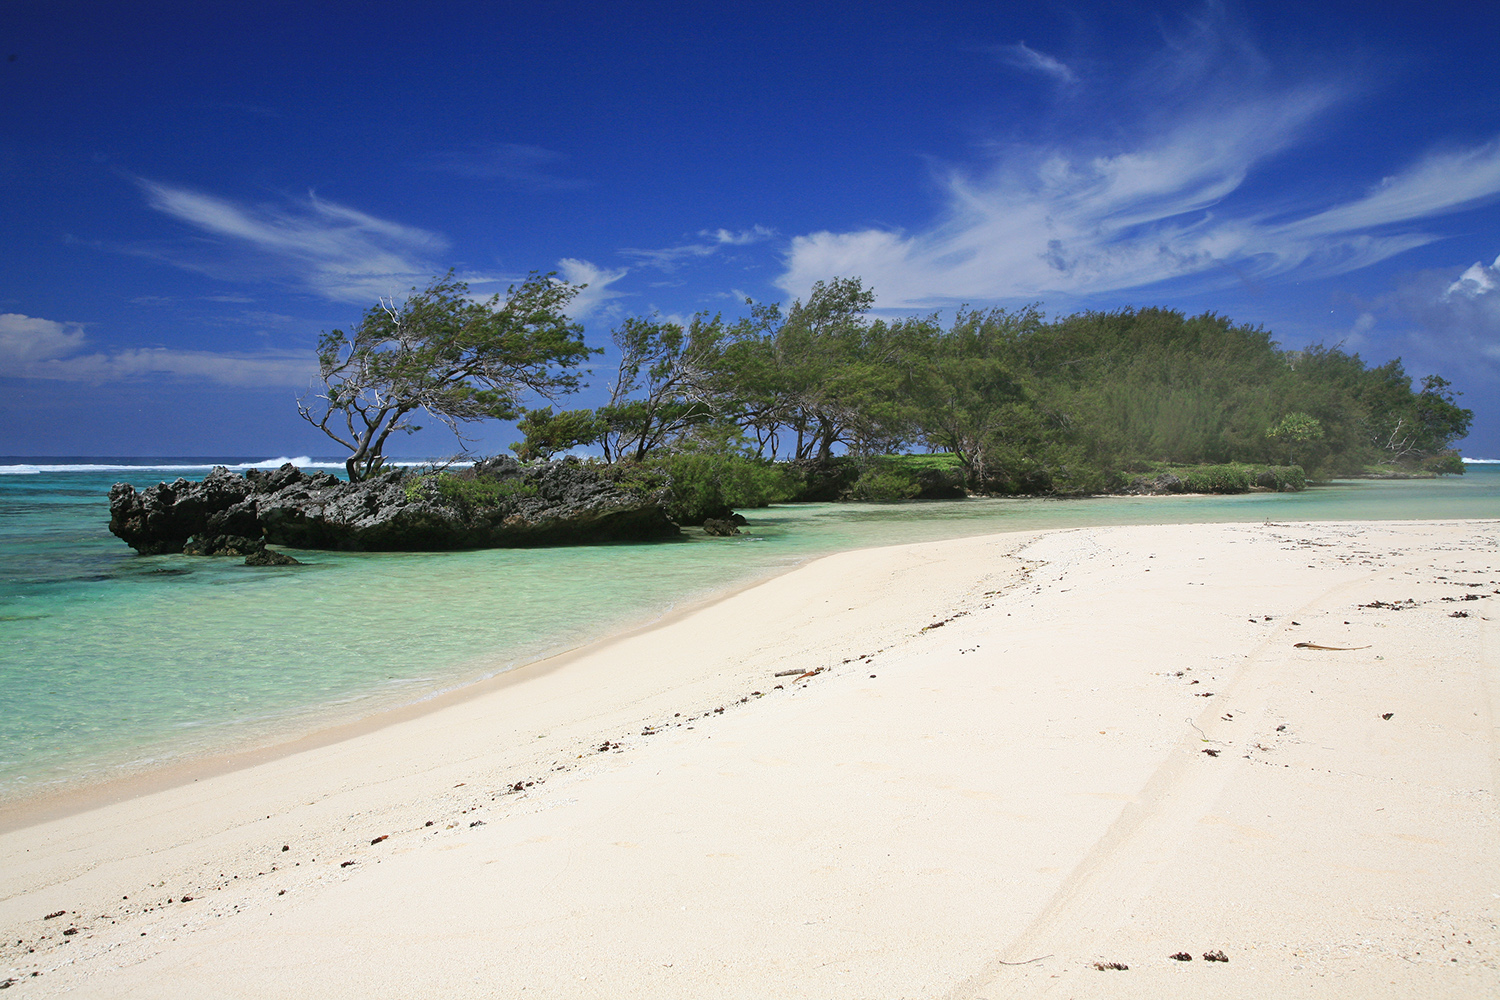 Plage de sable fin à Rimatara, dans l'archipel des Australes